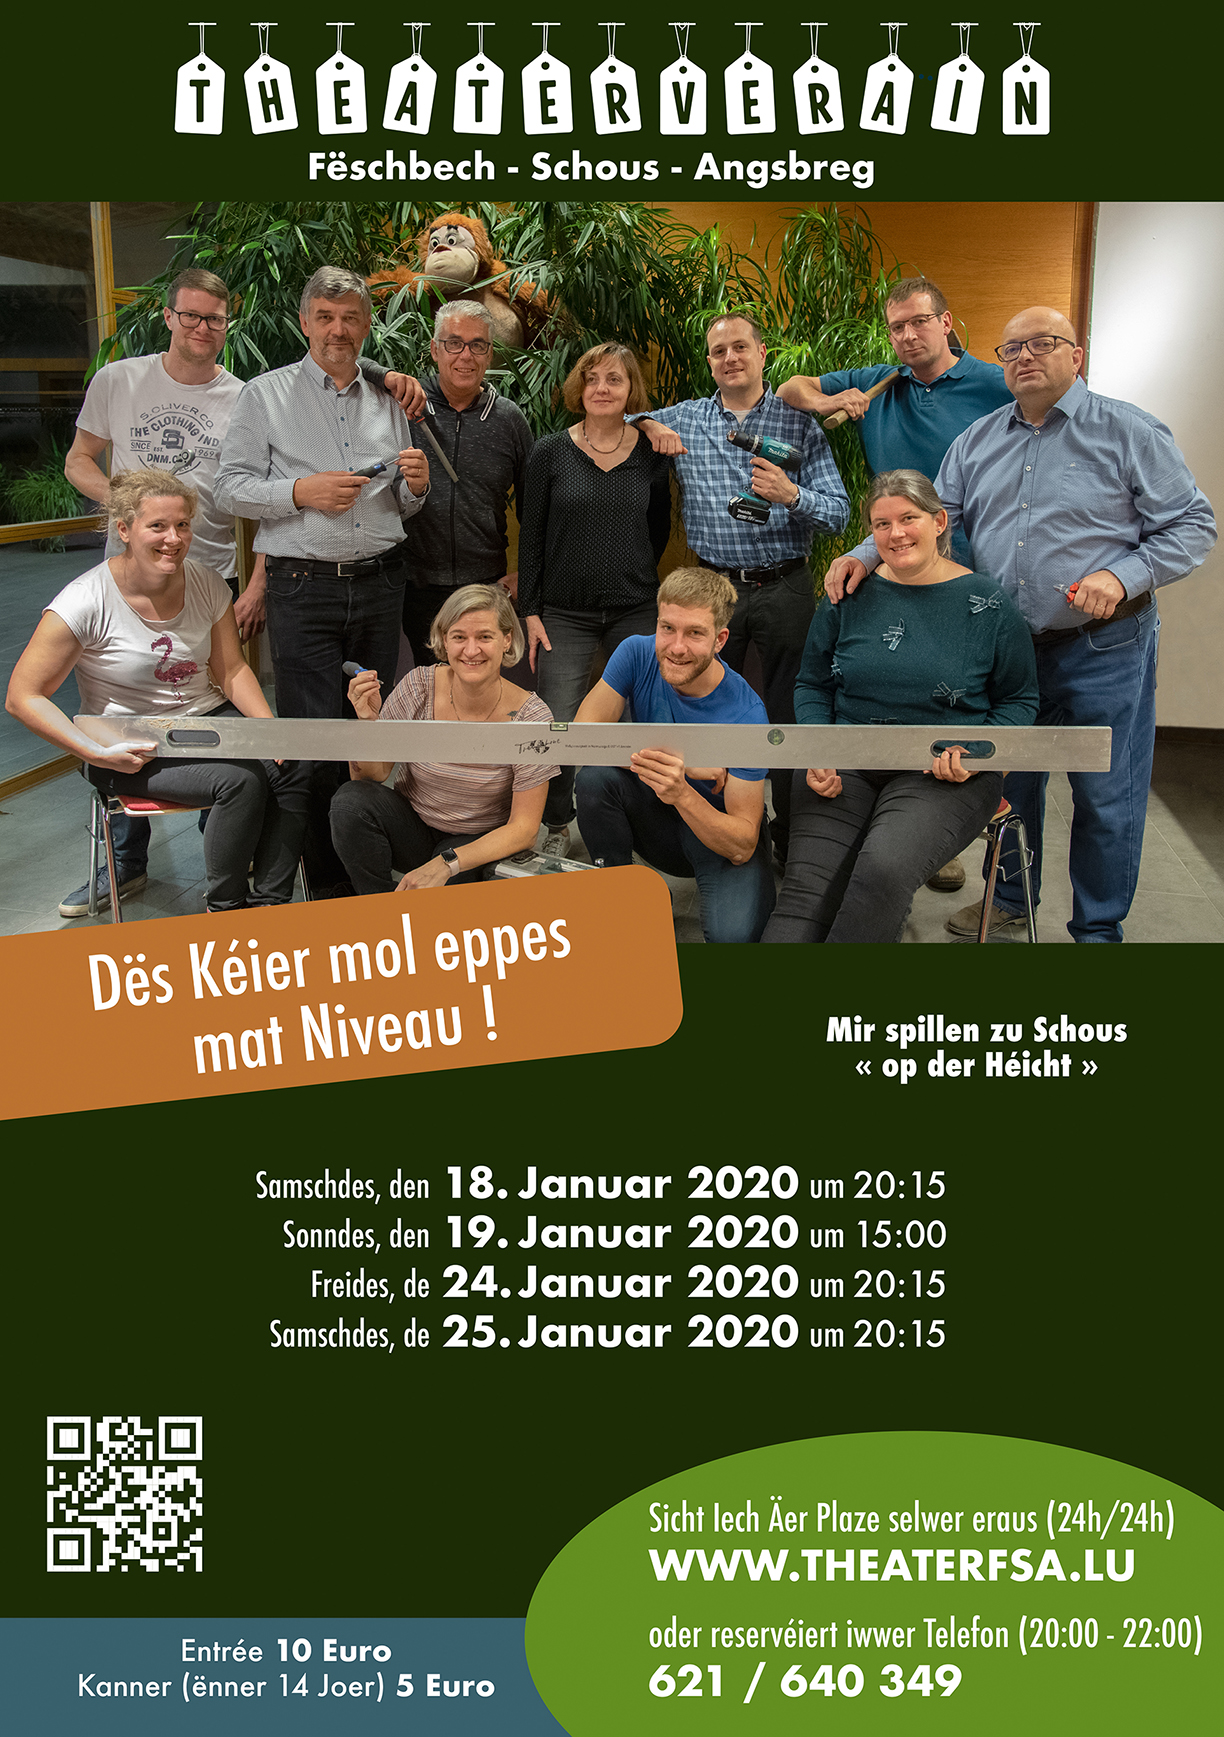 Plakat des Theatervereins Feschbech-Schous-Angsbreg zu "Des keier emol eppes mat Niveau!"